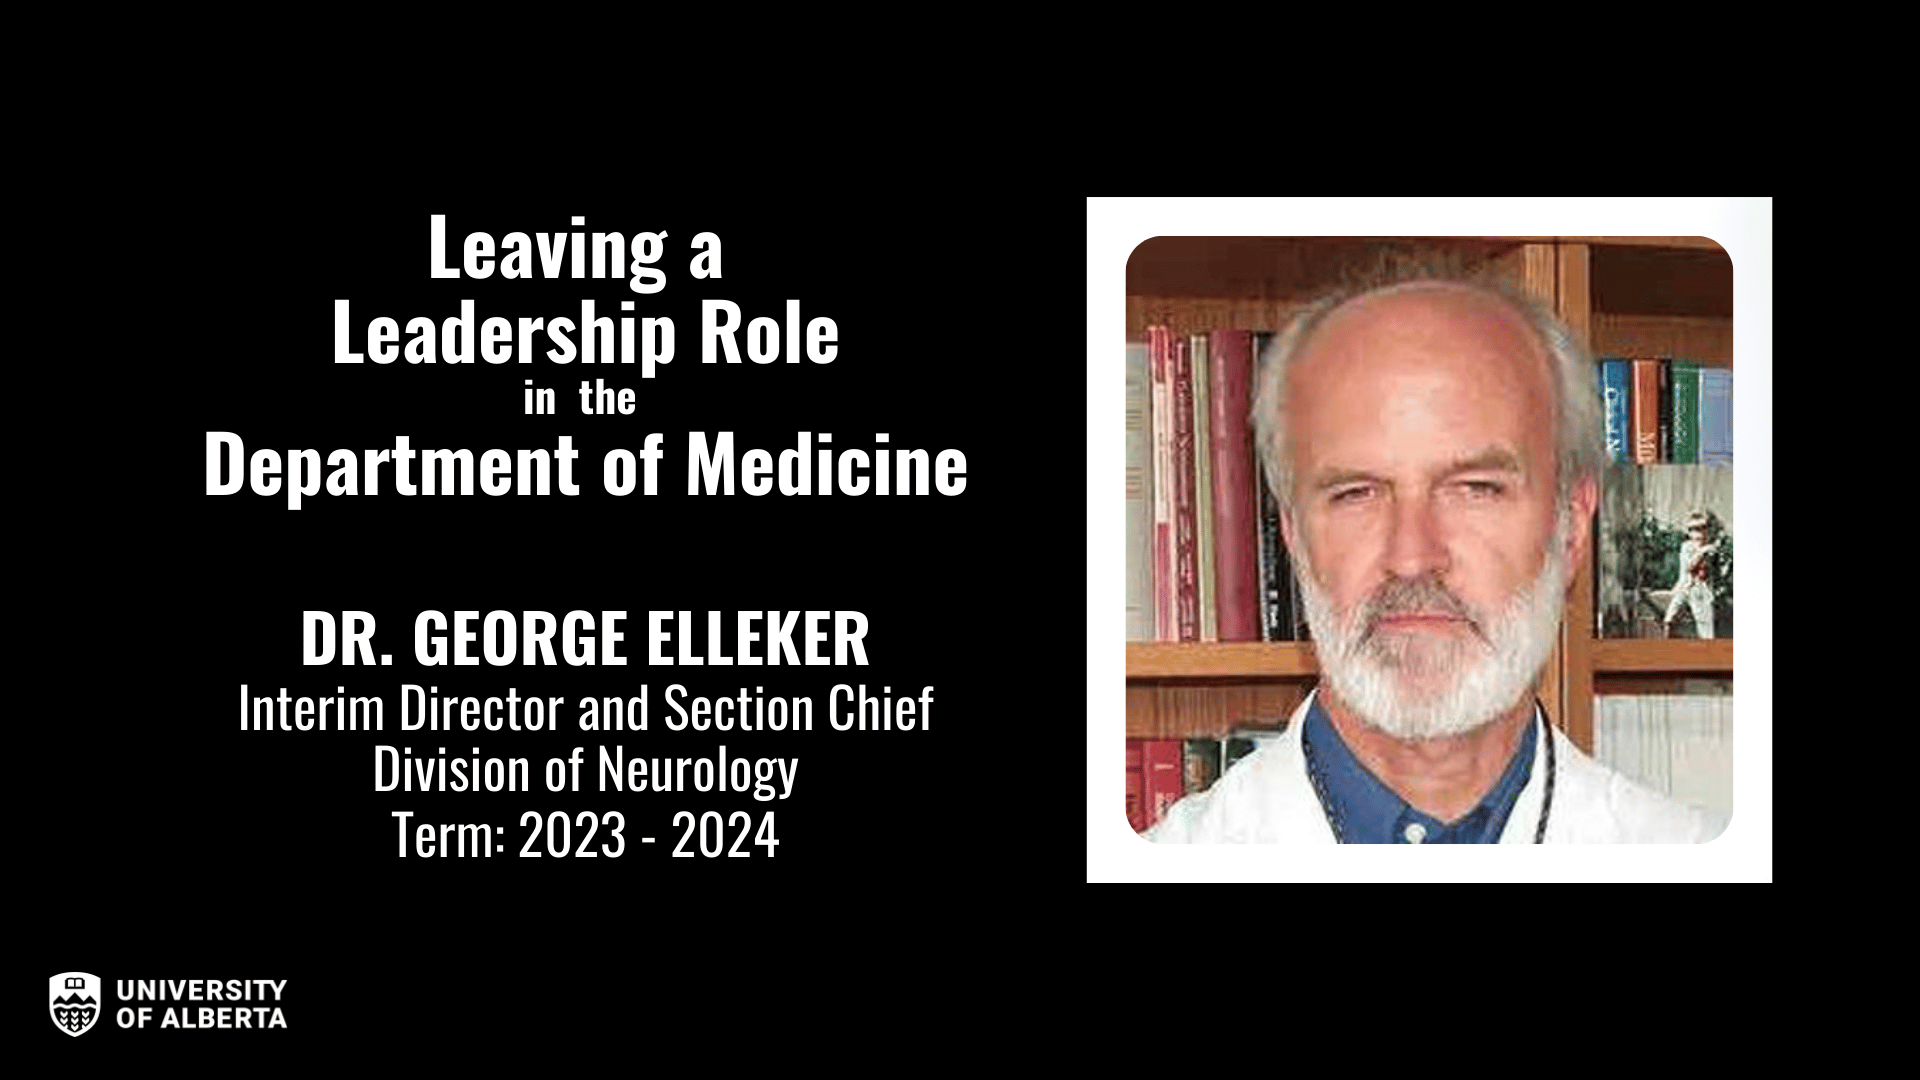 Dr. George Elleker